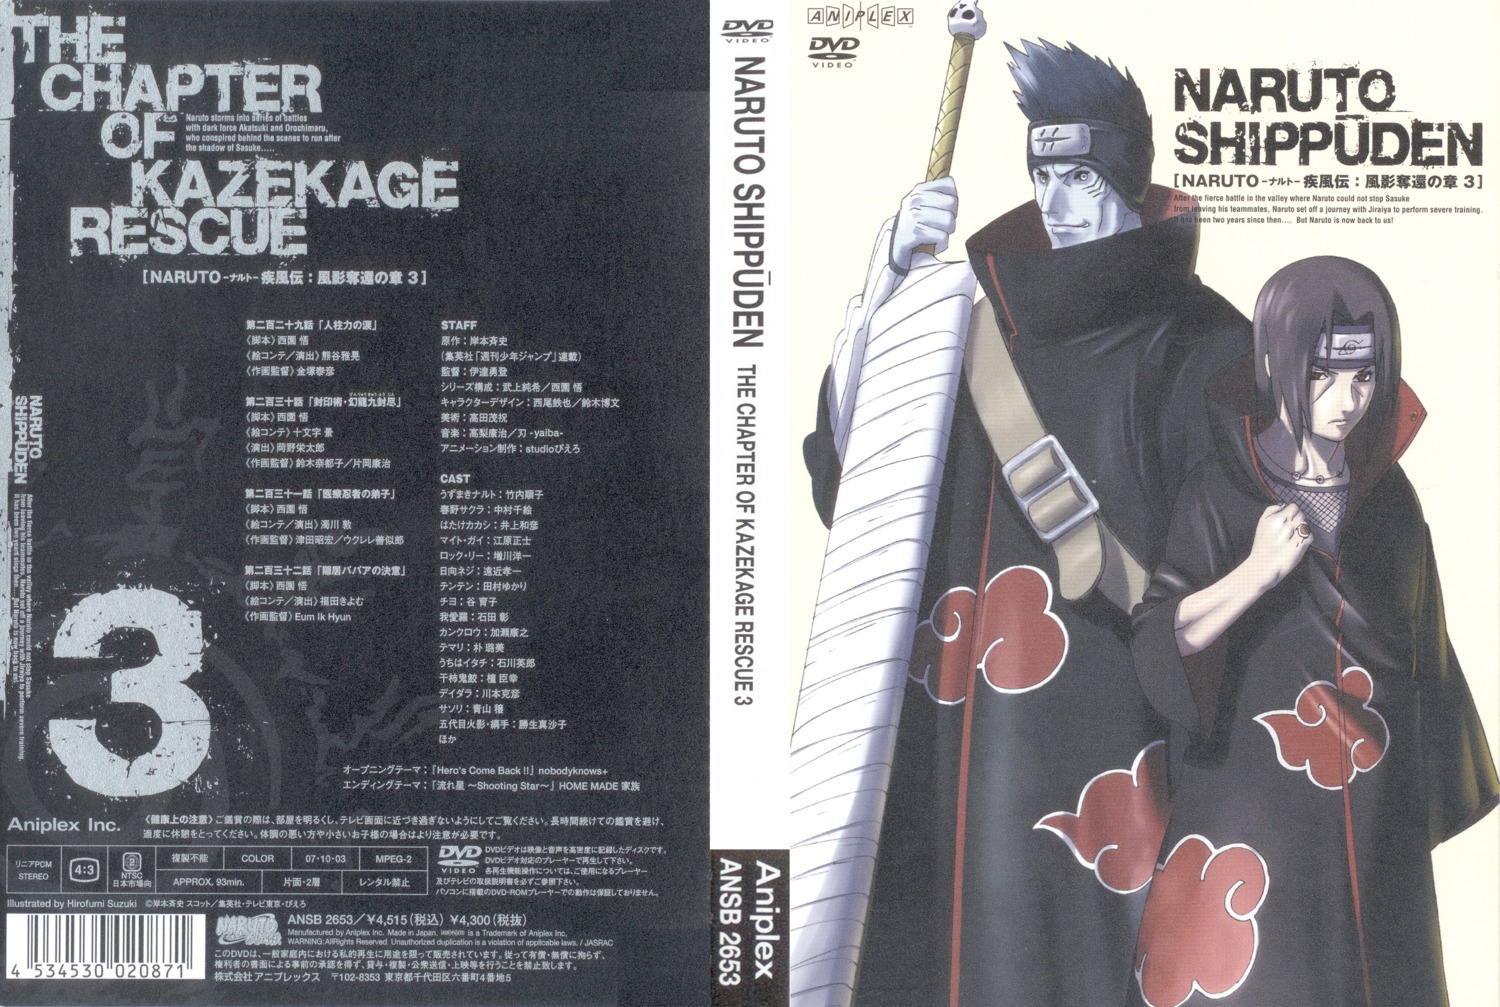 Suzuki Hirofumi Naruto Naruto Shippuden Hoshigaki Kisame Uchiha Itachi Disc Cover Male Screening Yande Re